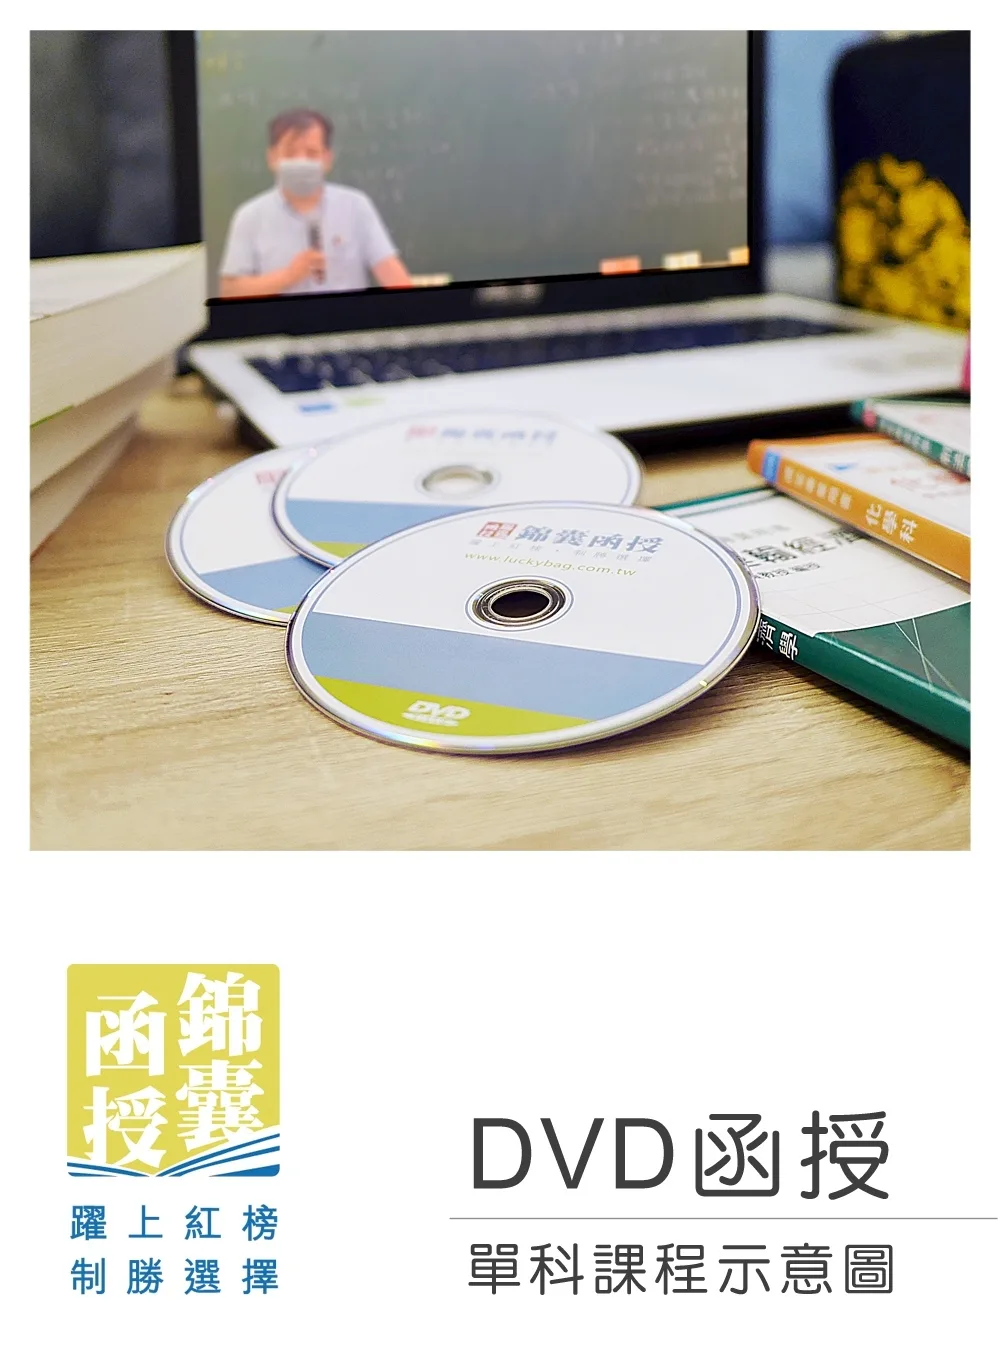 【DVD函授】地方自治-單科課程(112版)